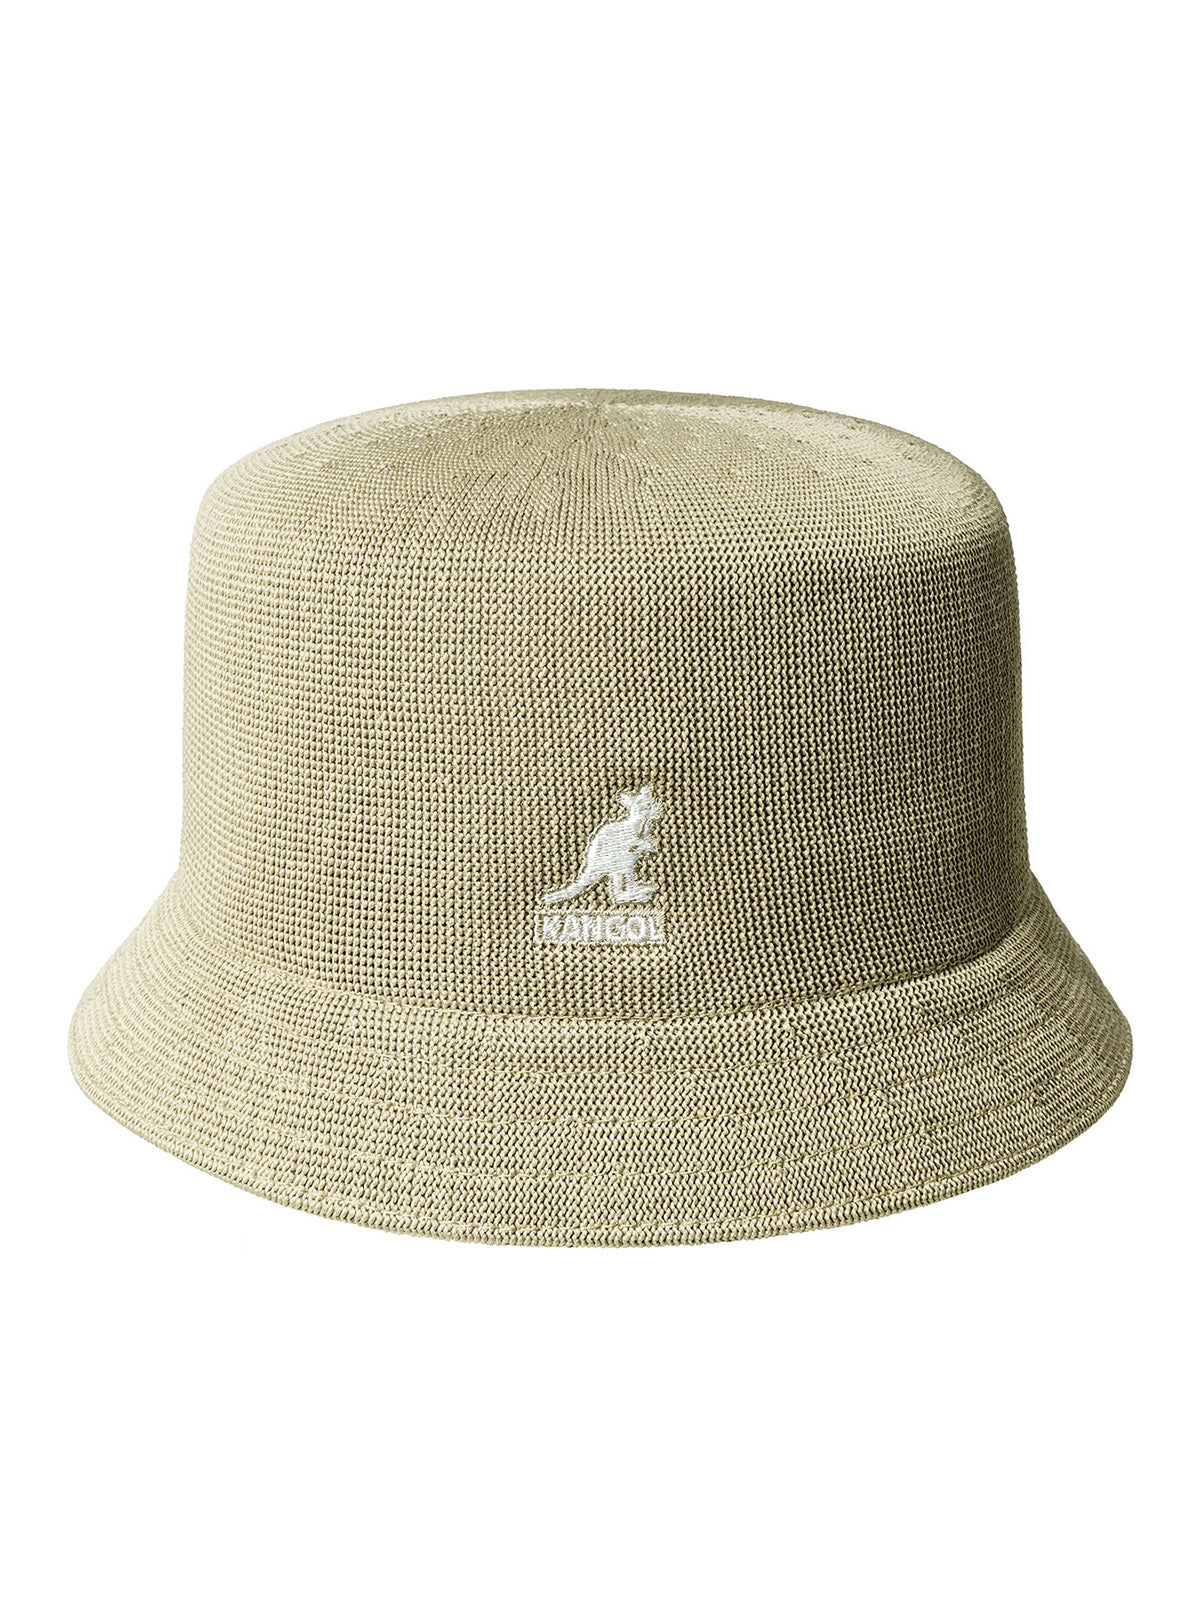 Kangol Unisex Bucket Hats - Kangol Tropic Bin - Beige